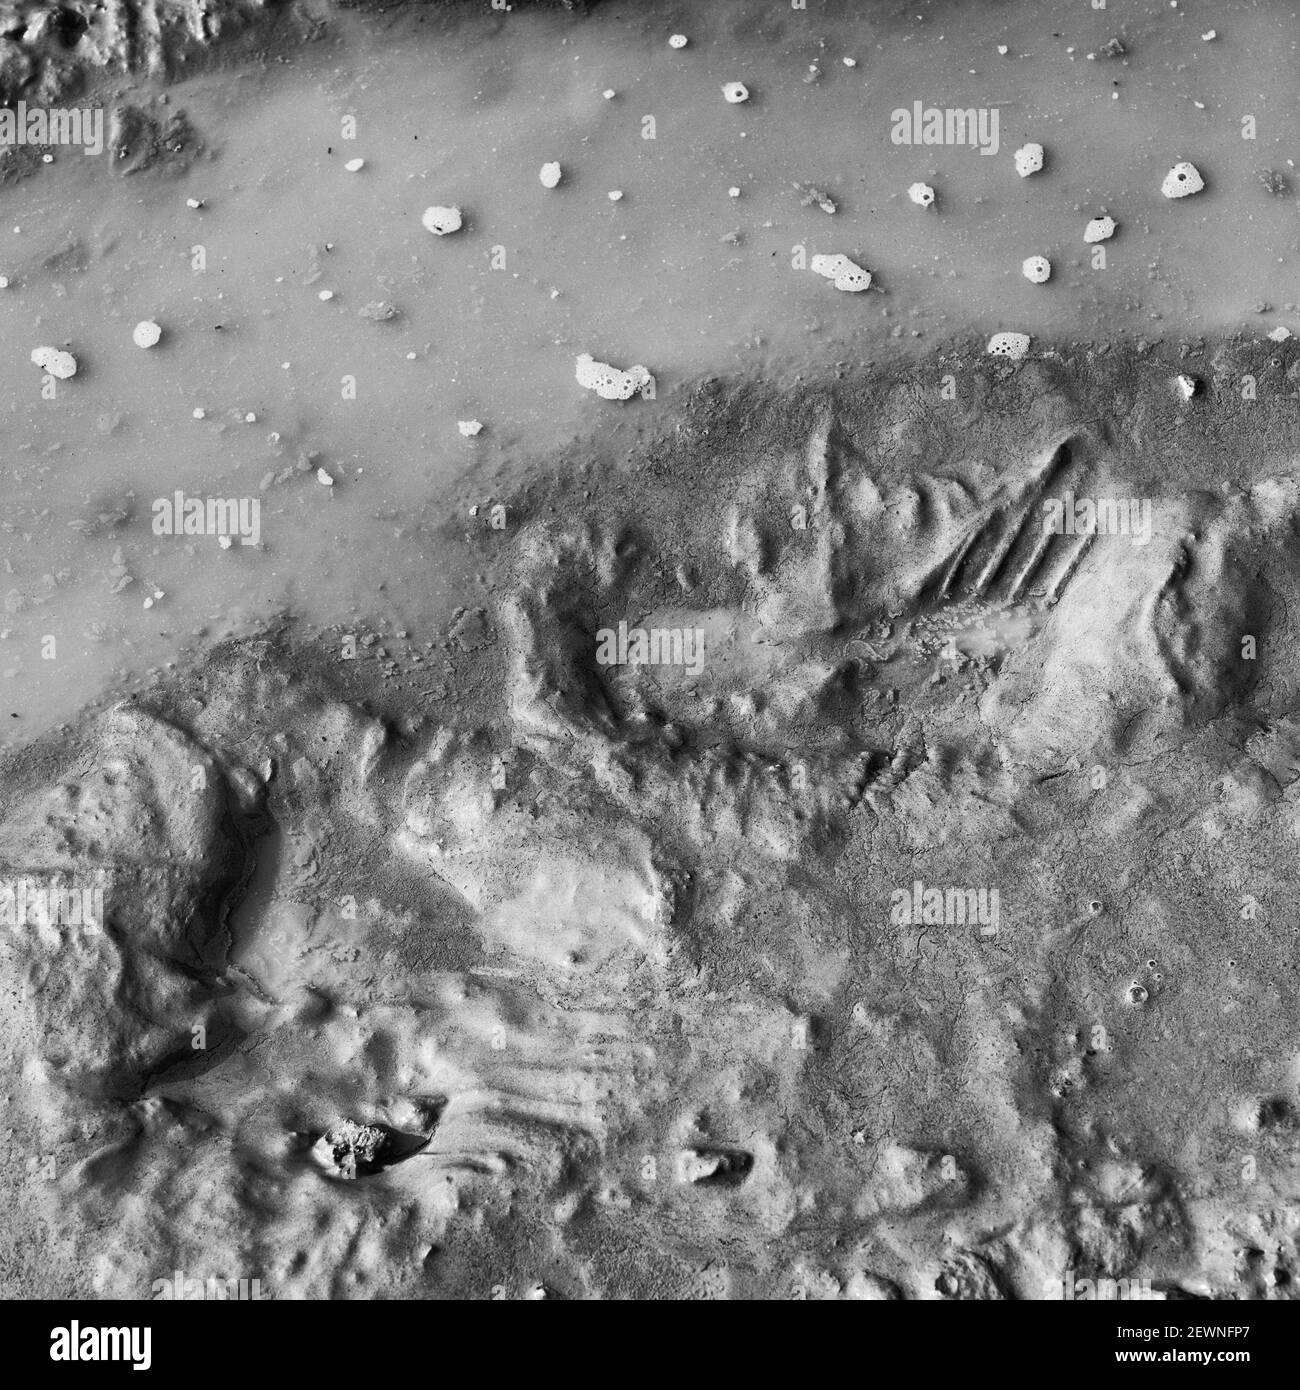 Nero e bianco indistinto fangoso cavetto primordiale e forma parziale del piede come lingua-in-guancia astratto della caccia della NASA per la vita su Marte. Pulire come fango. Foto Stock